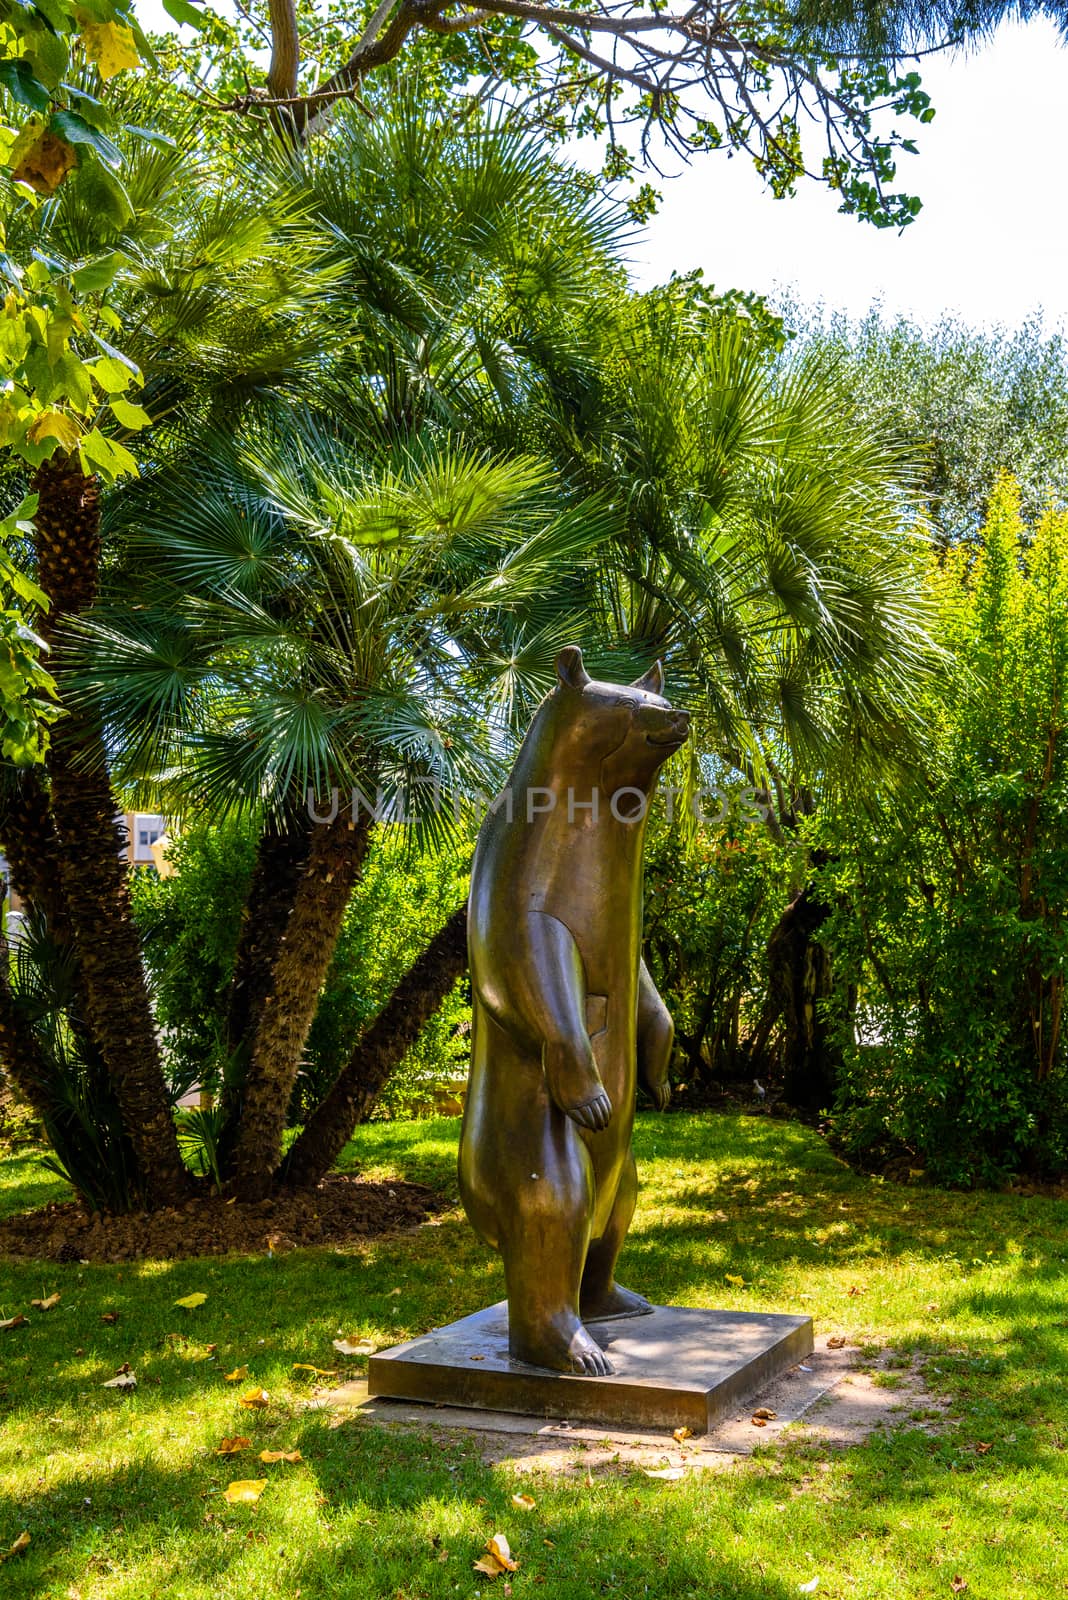 Bear sculpture in Fontvielle, Monte-Carlo, Monaco, Cote d'Azur, French Riviera.